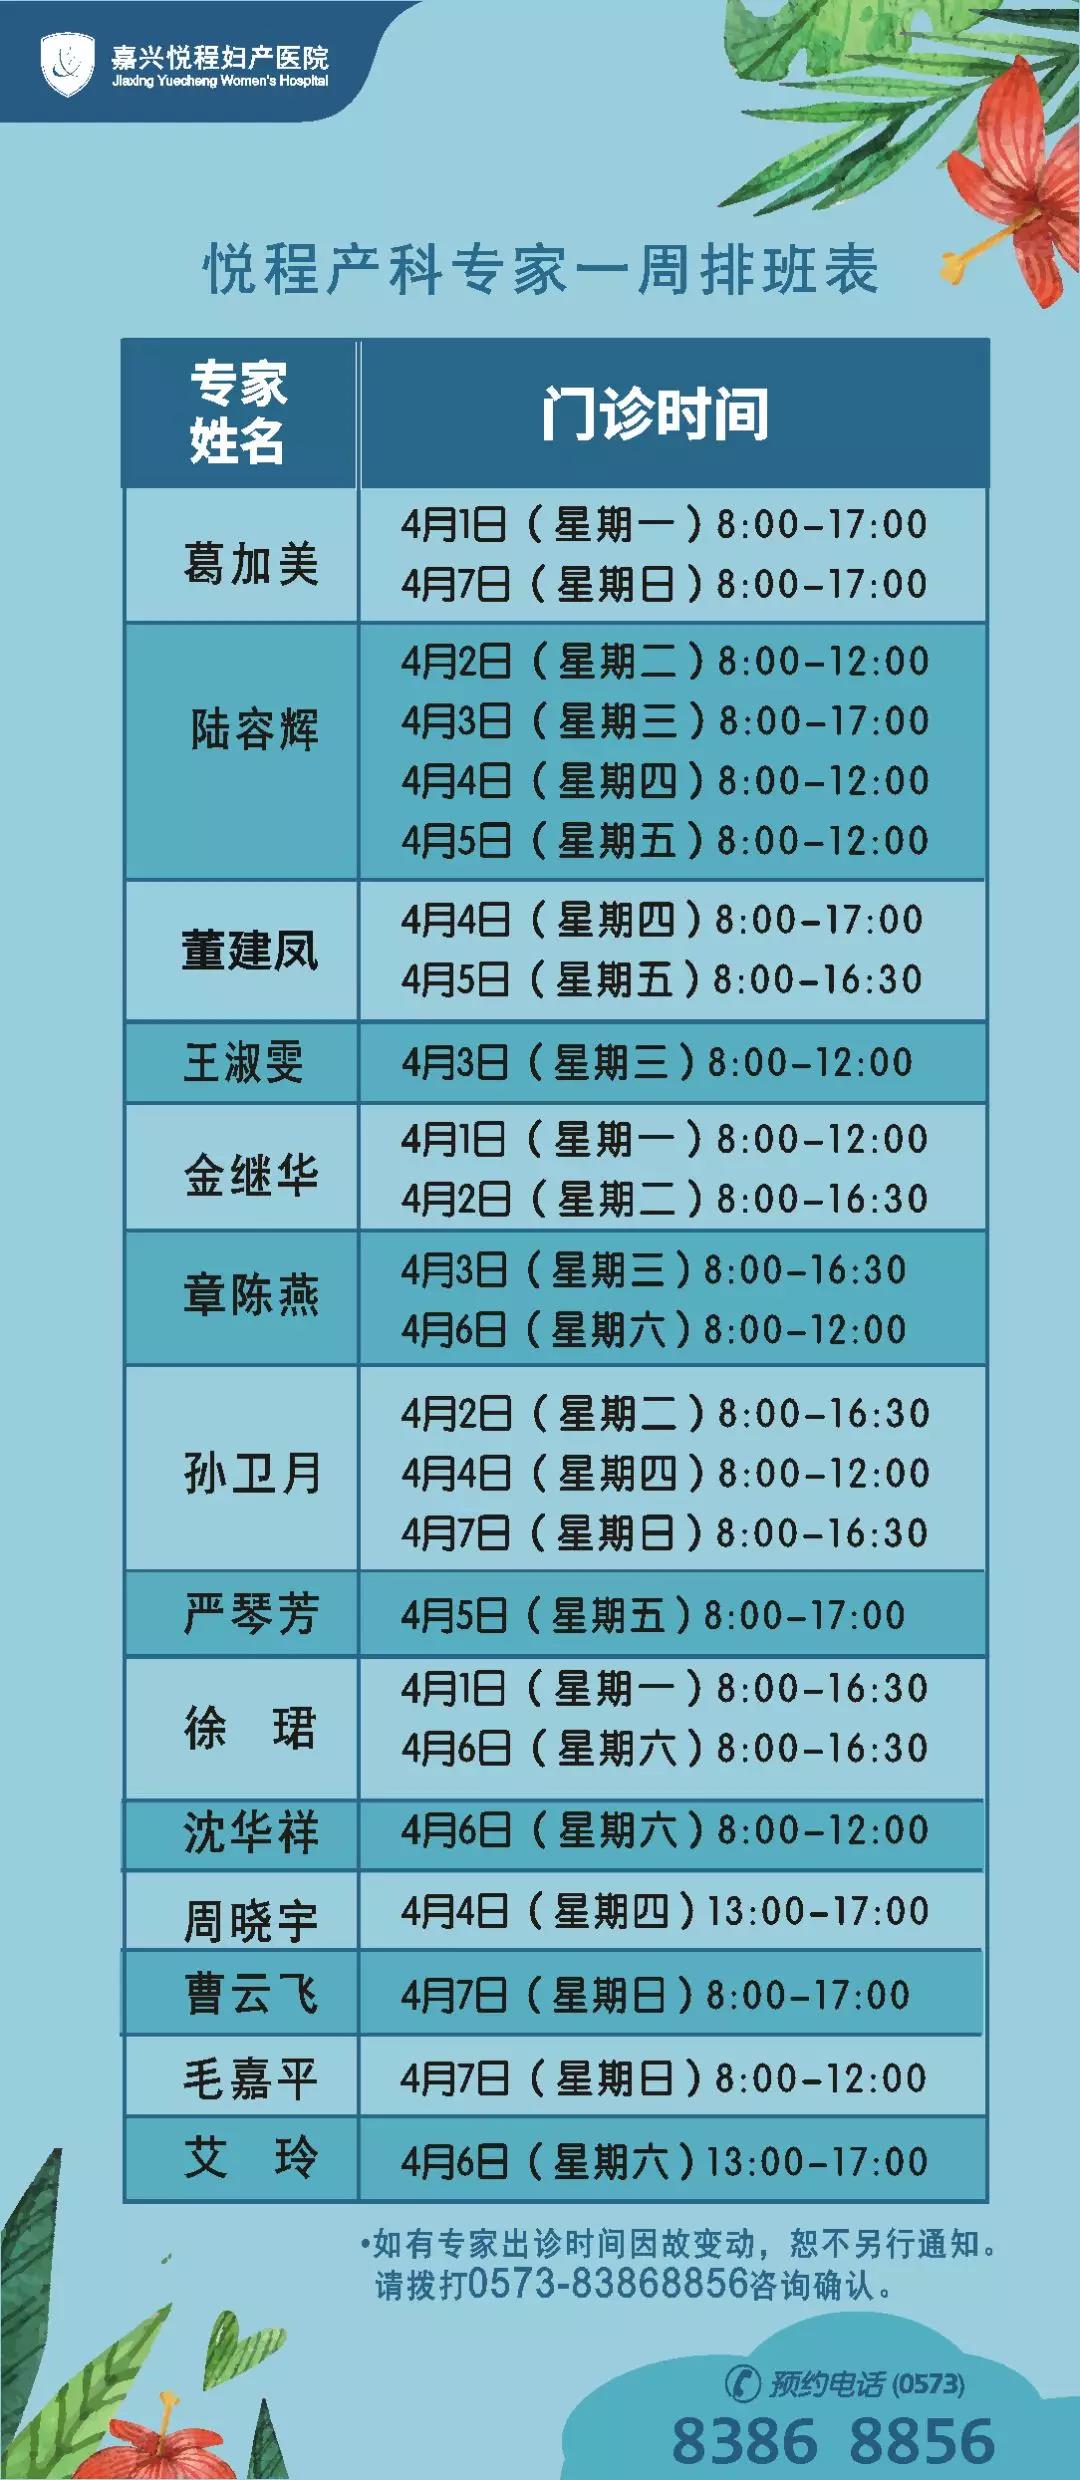 悦程产科专家4月1日-4月7日医生门诊时间表